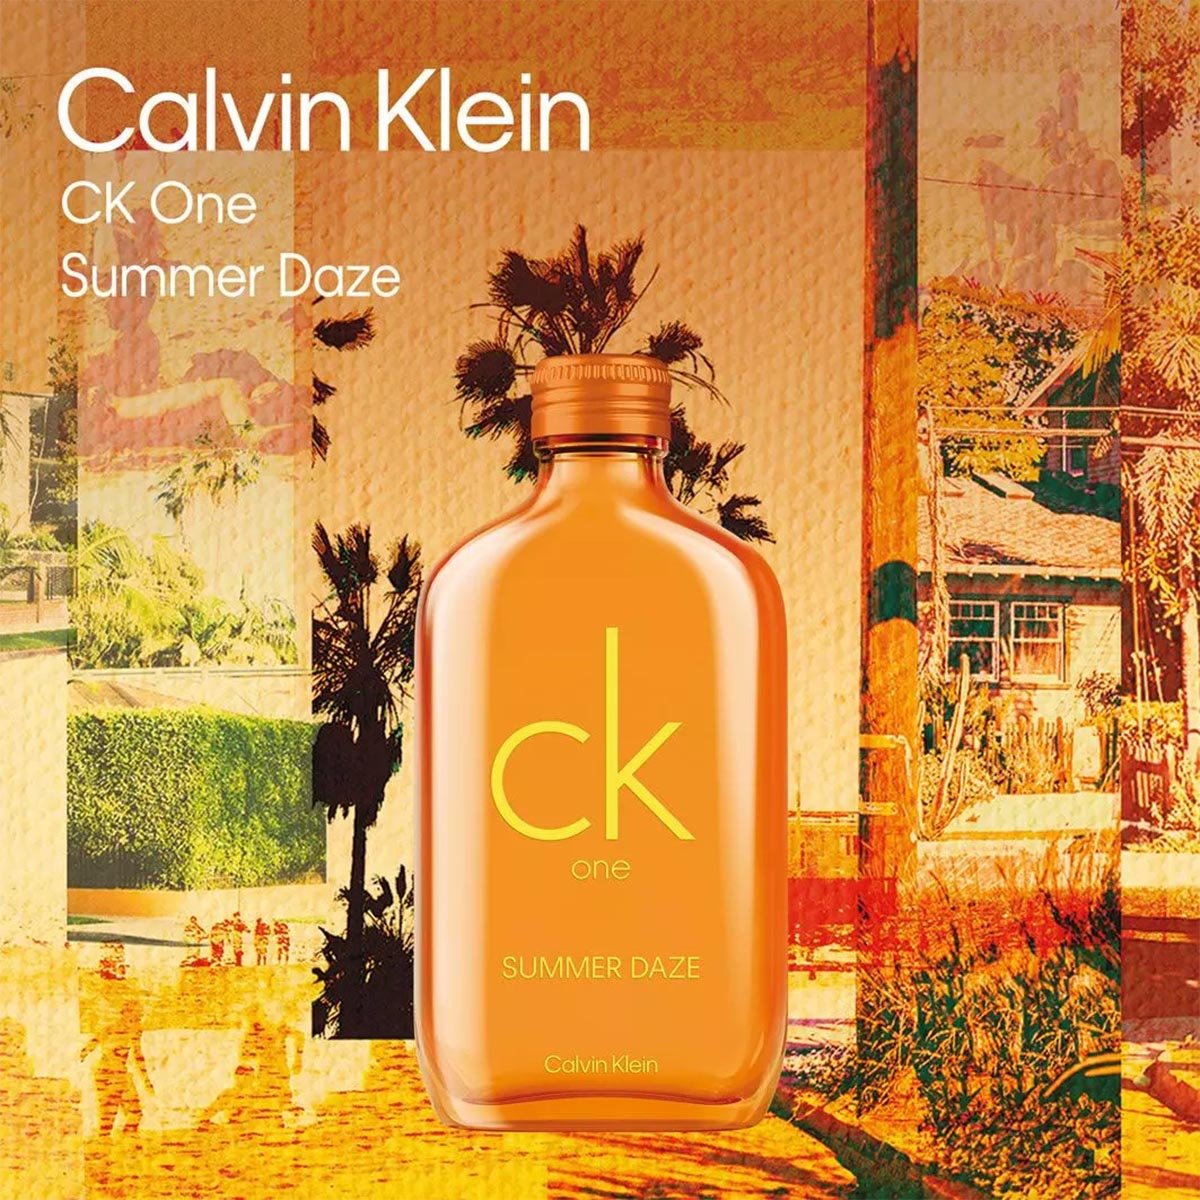 Calvin Klein CK One Summer Daze EDT | My Perfume Shop Australia